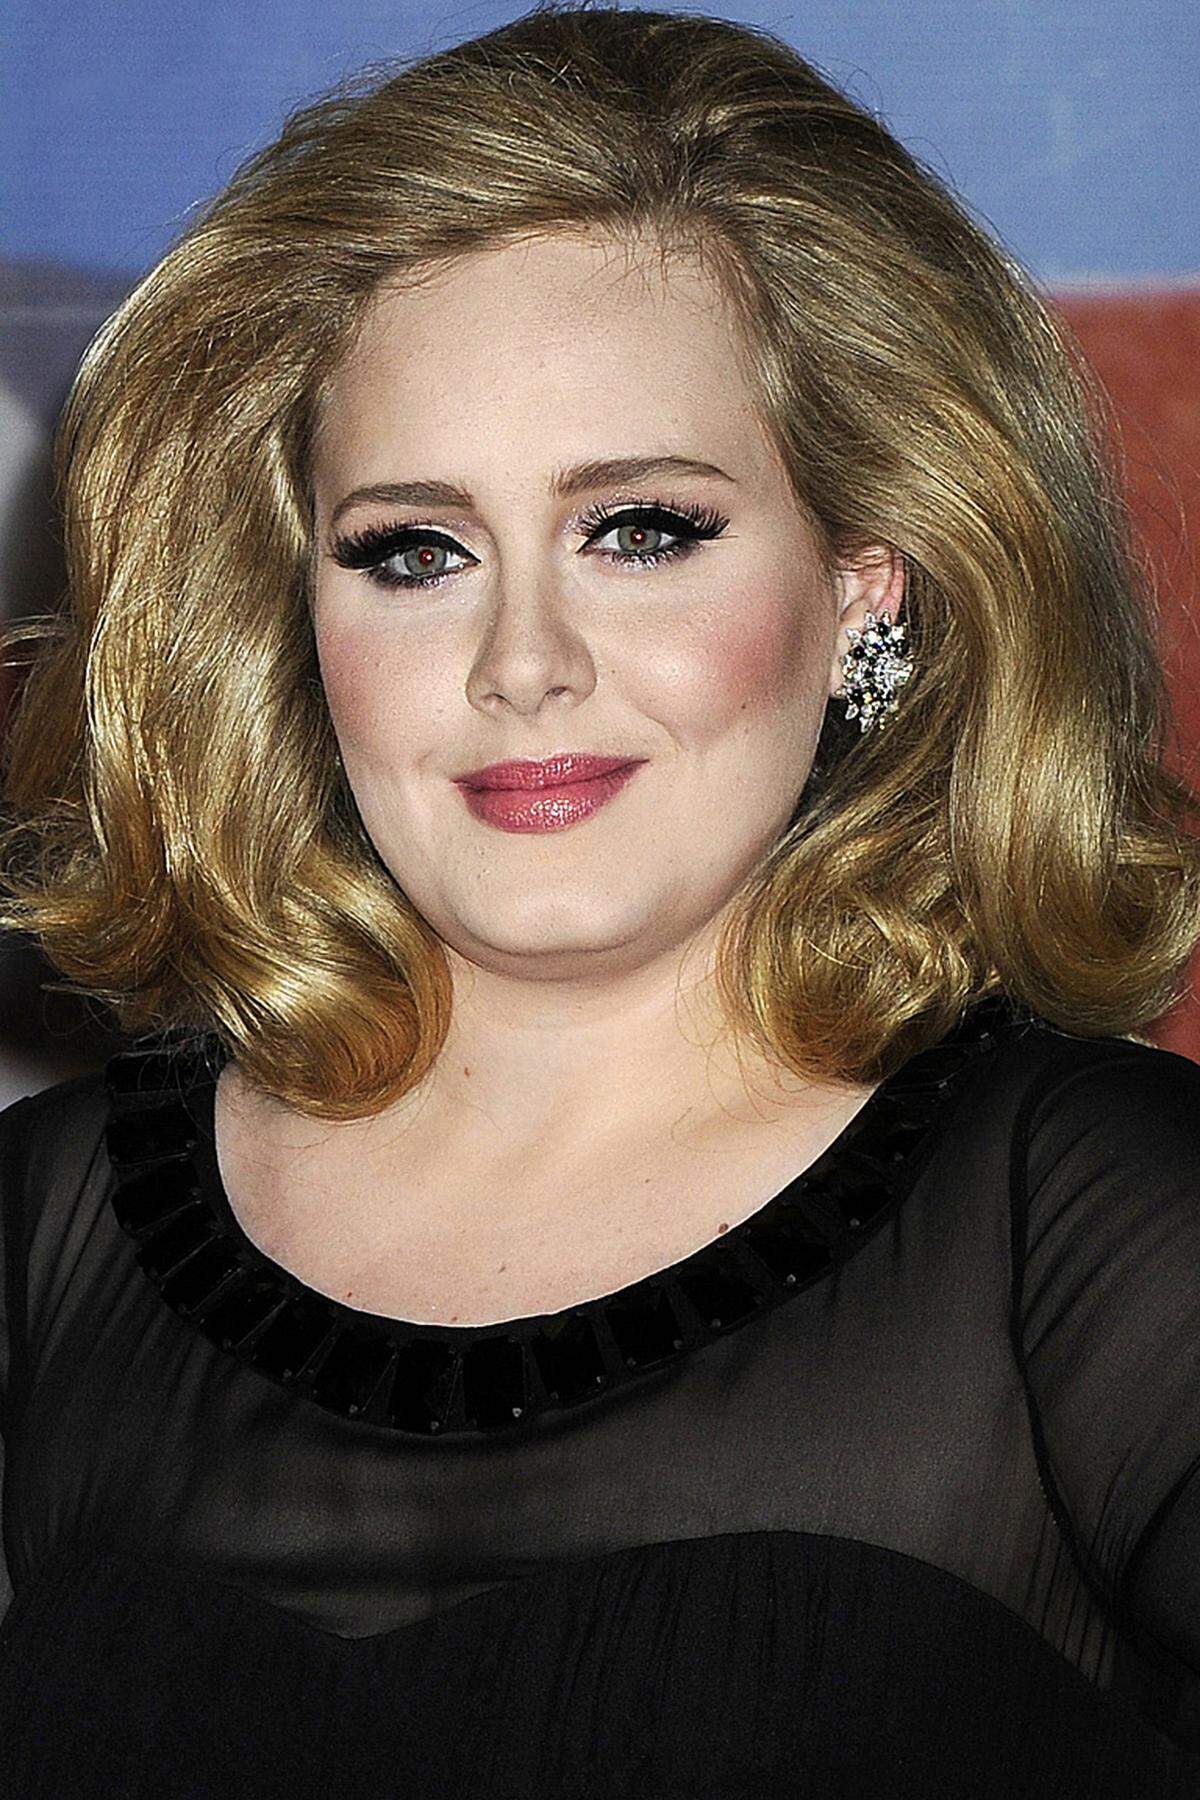 Mit 24 Jahren ist Adele um zwei Jahre jünger als der US-Popstar. In ihrer noch jungen Karriere hat die Britin schon viel erreicht, u.a. gewann sie acht Grammys. Im Vorjahr gelang Adele mit "21" der weltweite Durchbruch, aktuell erobert sie mit "Skyfall", dem Titelsong des gleichnamigen, neuen James-Bond-Films, die internationalen (iTunes-) Charts.